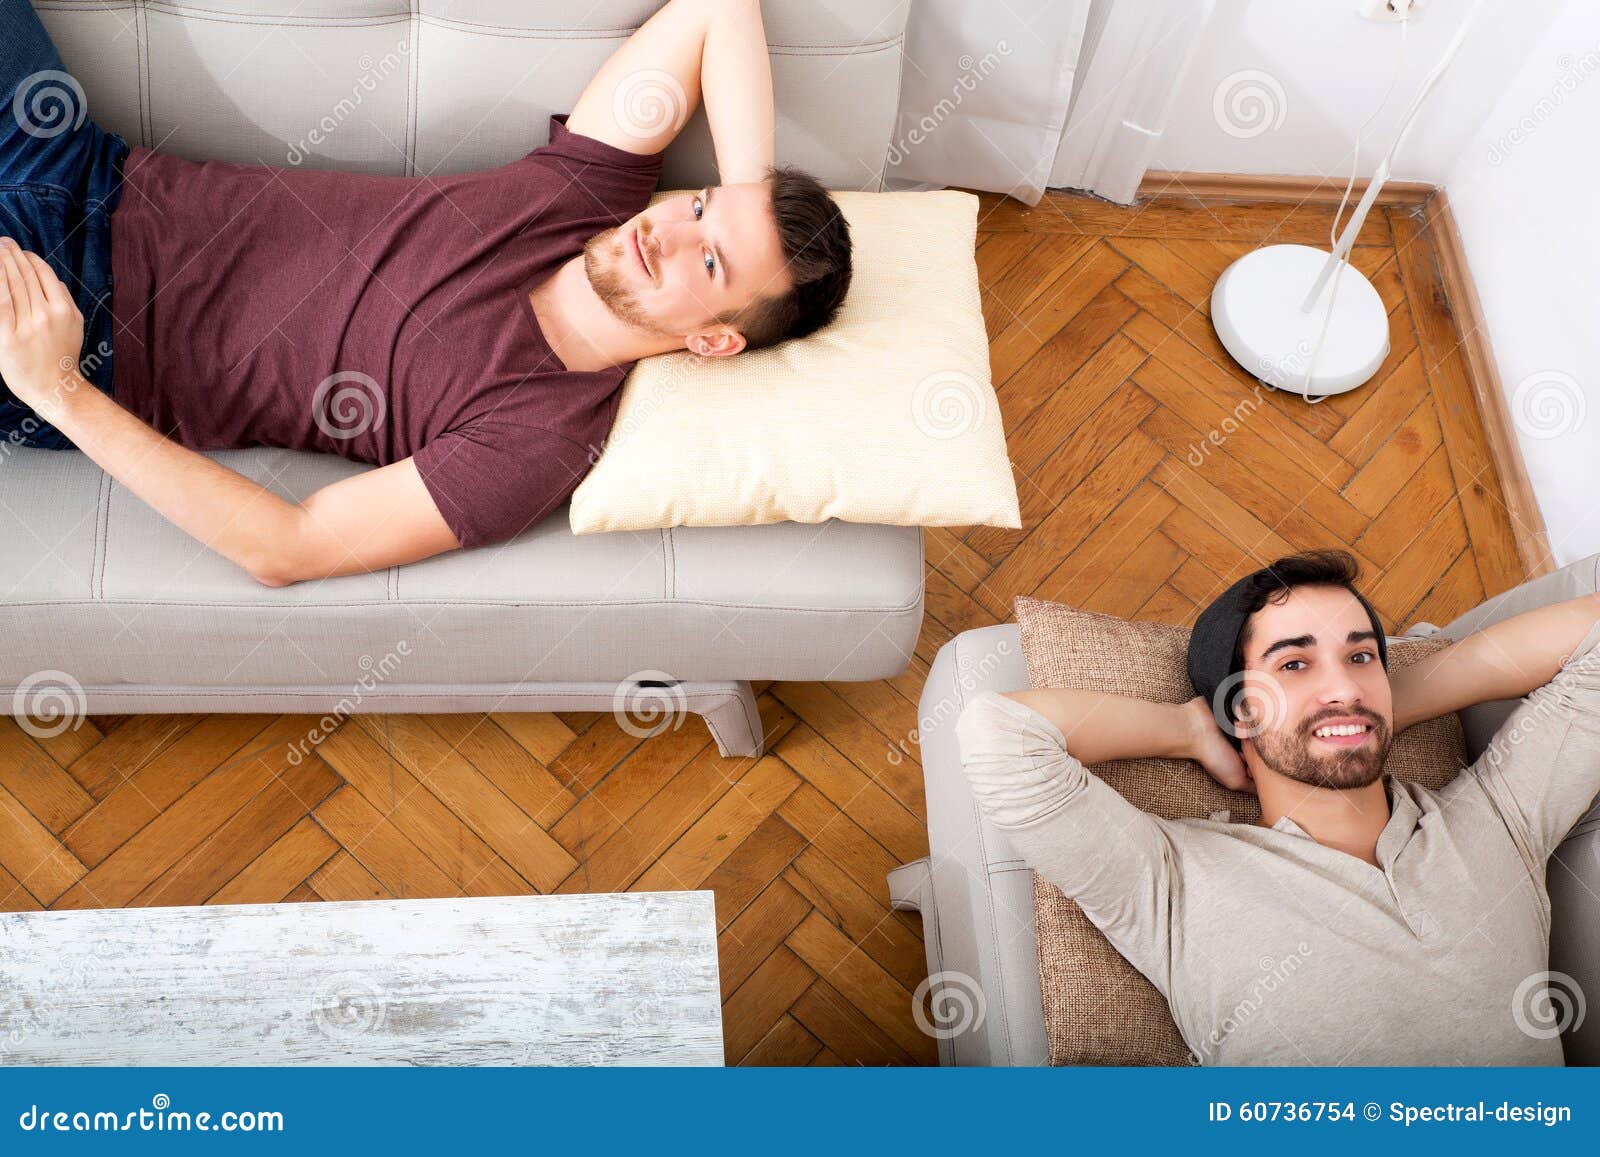 Бывший муж отдыхает. Мужчина отдыхает дома. Мужчина отдыхает дома картинки. Фото дивана с лежачим мужчиной. Отдых дома Сток.